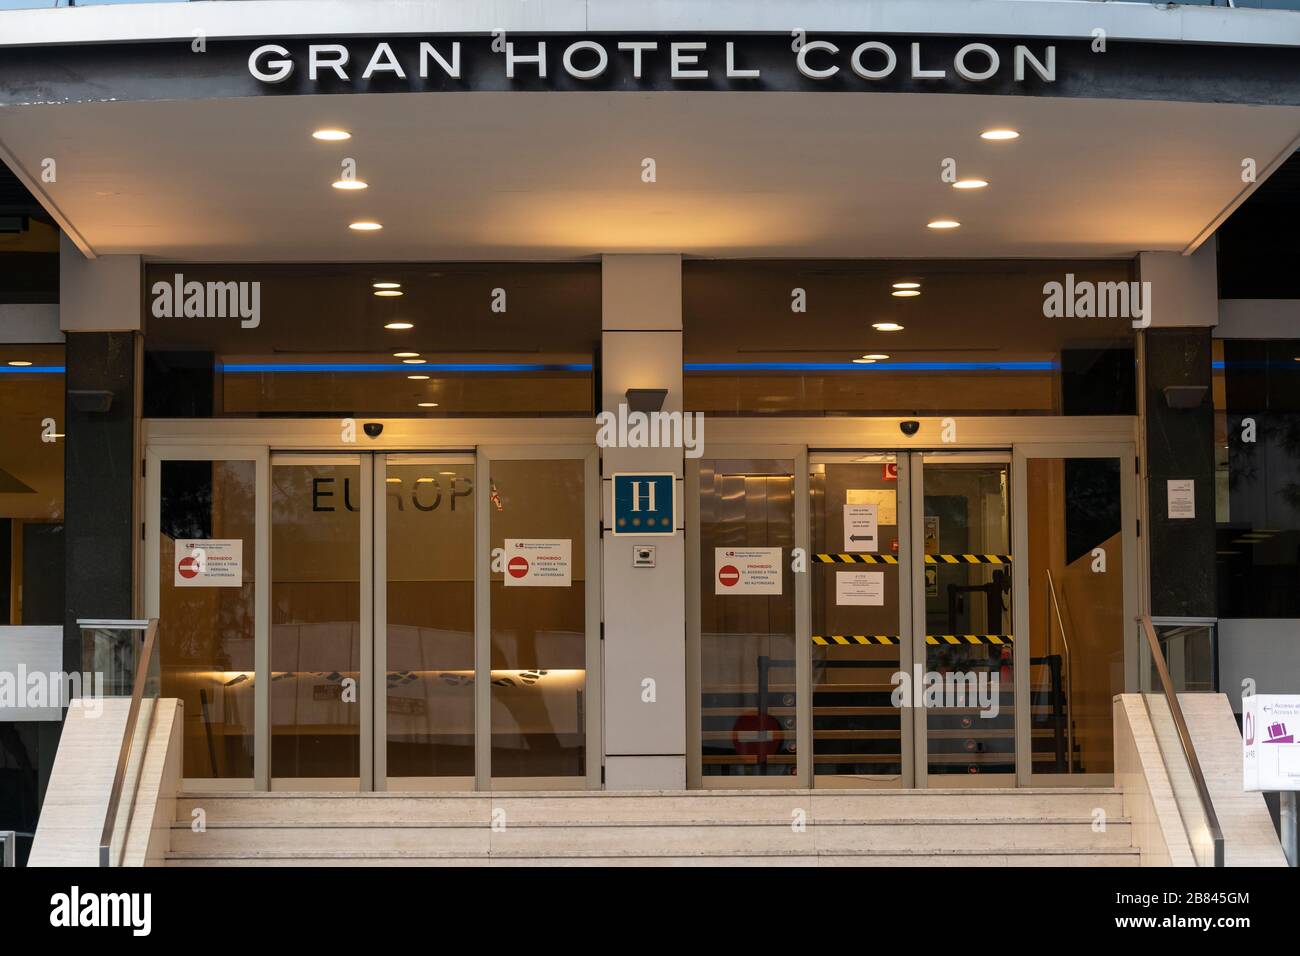 Haupteingang des Gran Hotel Colon Hotels im Stadtzentrum von Madrid. Am 19. März ist das Gran Hotel Colon das erste medizinische Hotel in Spanien geworden, in dem Patienten mit leichten Coronavirus-Symptomen behandelt werden. Die Schilder an den Eingangstüren warnen, dass der Zugang zu unbefugten Personen verboten ist. Das Hotel verfügt über 365 Zimmer, in denen Patienten mit Coronavirus versorgt werden, um Druck von überfüllten Krankenhäusern zu lindern. Stockfoto